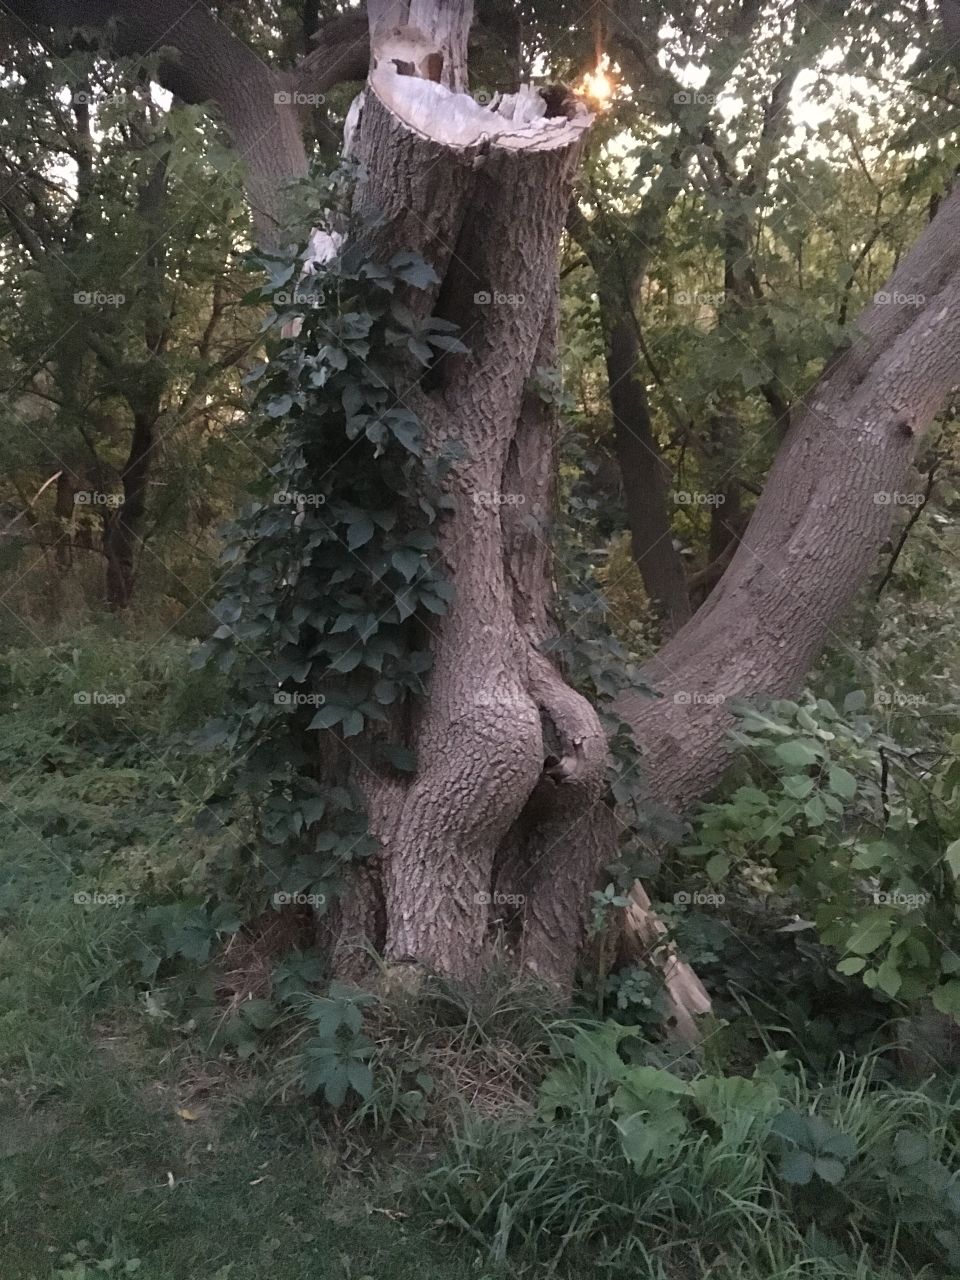 Tree funny